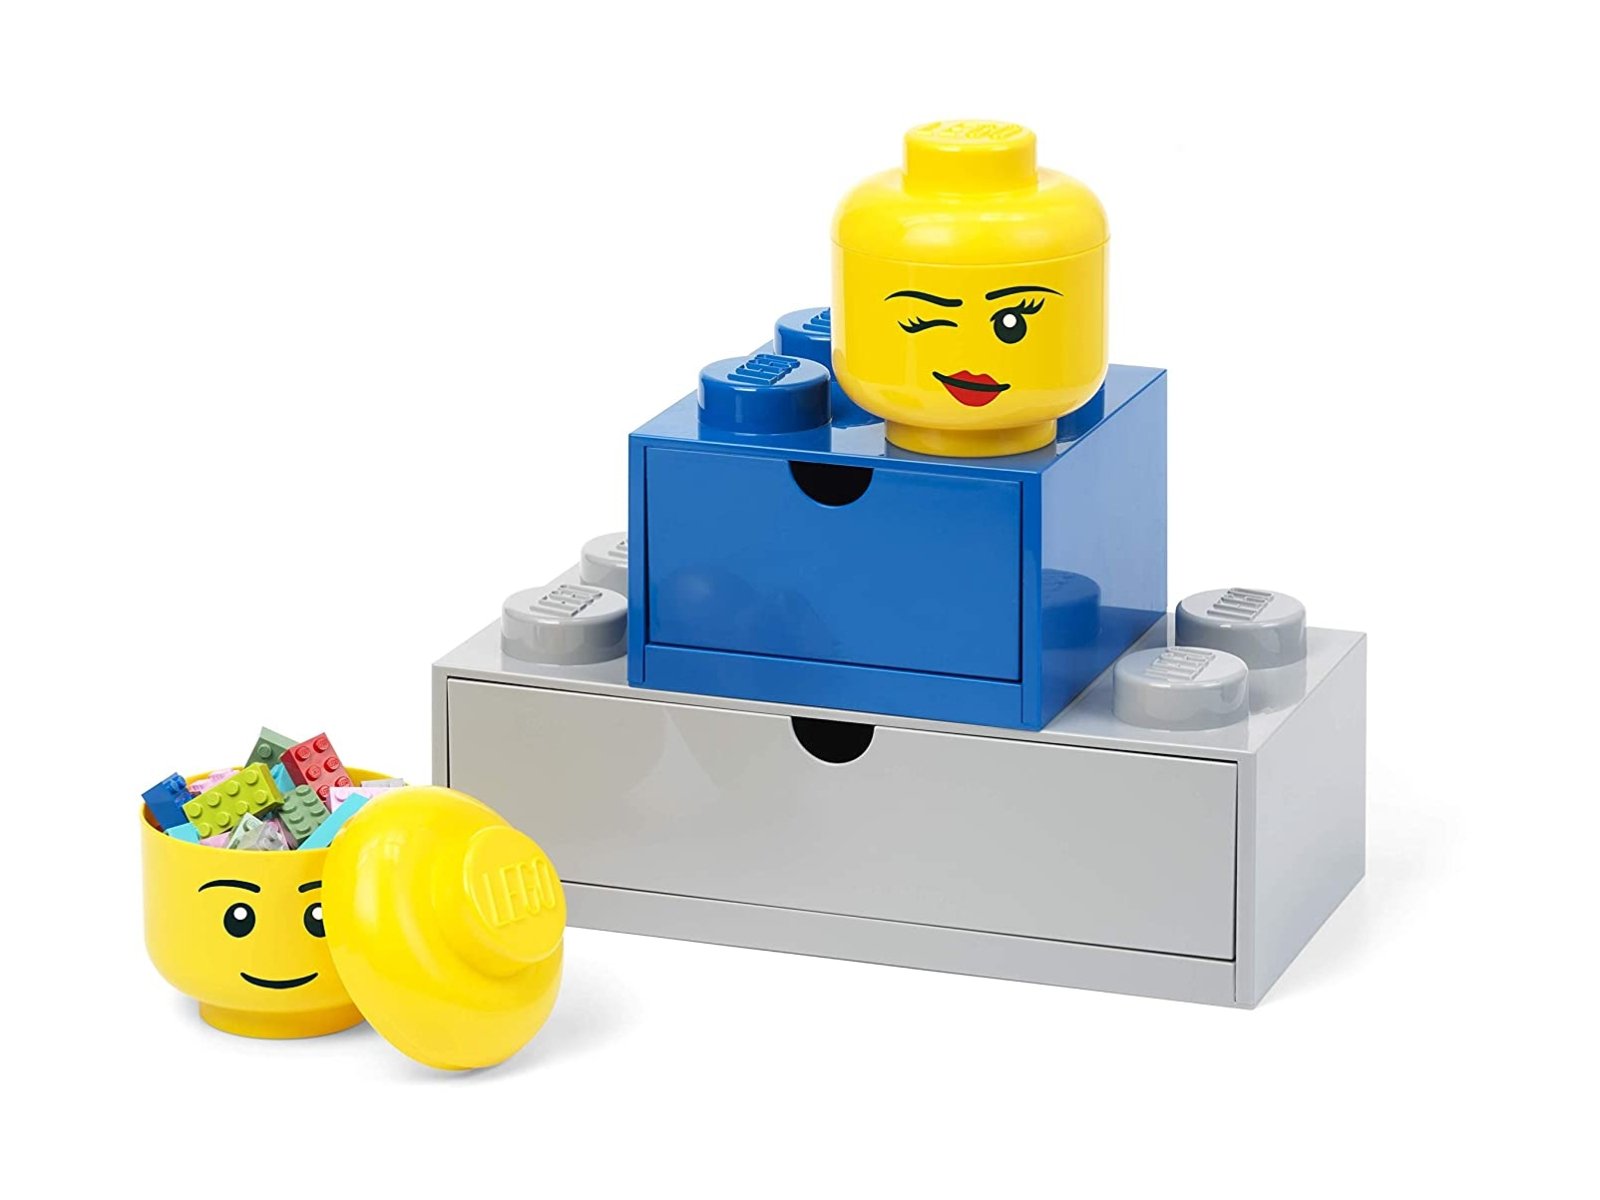 LEGO Miniaturowy pojemnik w kształcie głowy jasnożółtej minifigurki chłopca 5006258